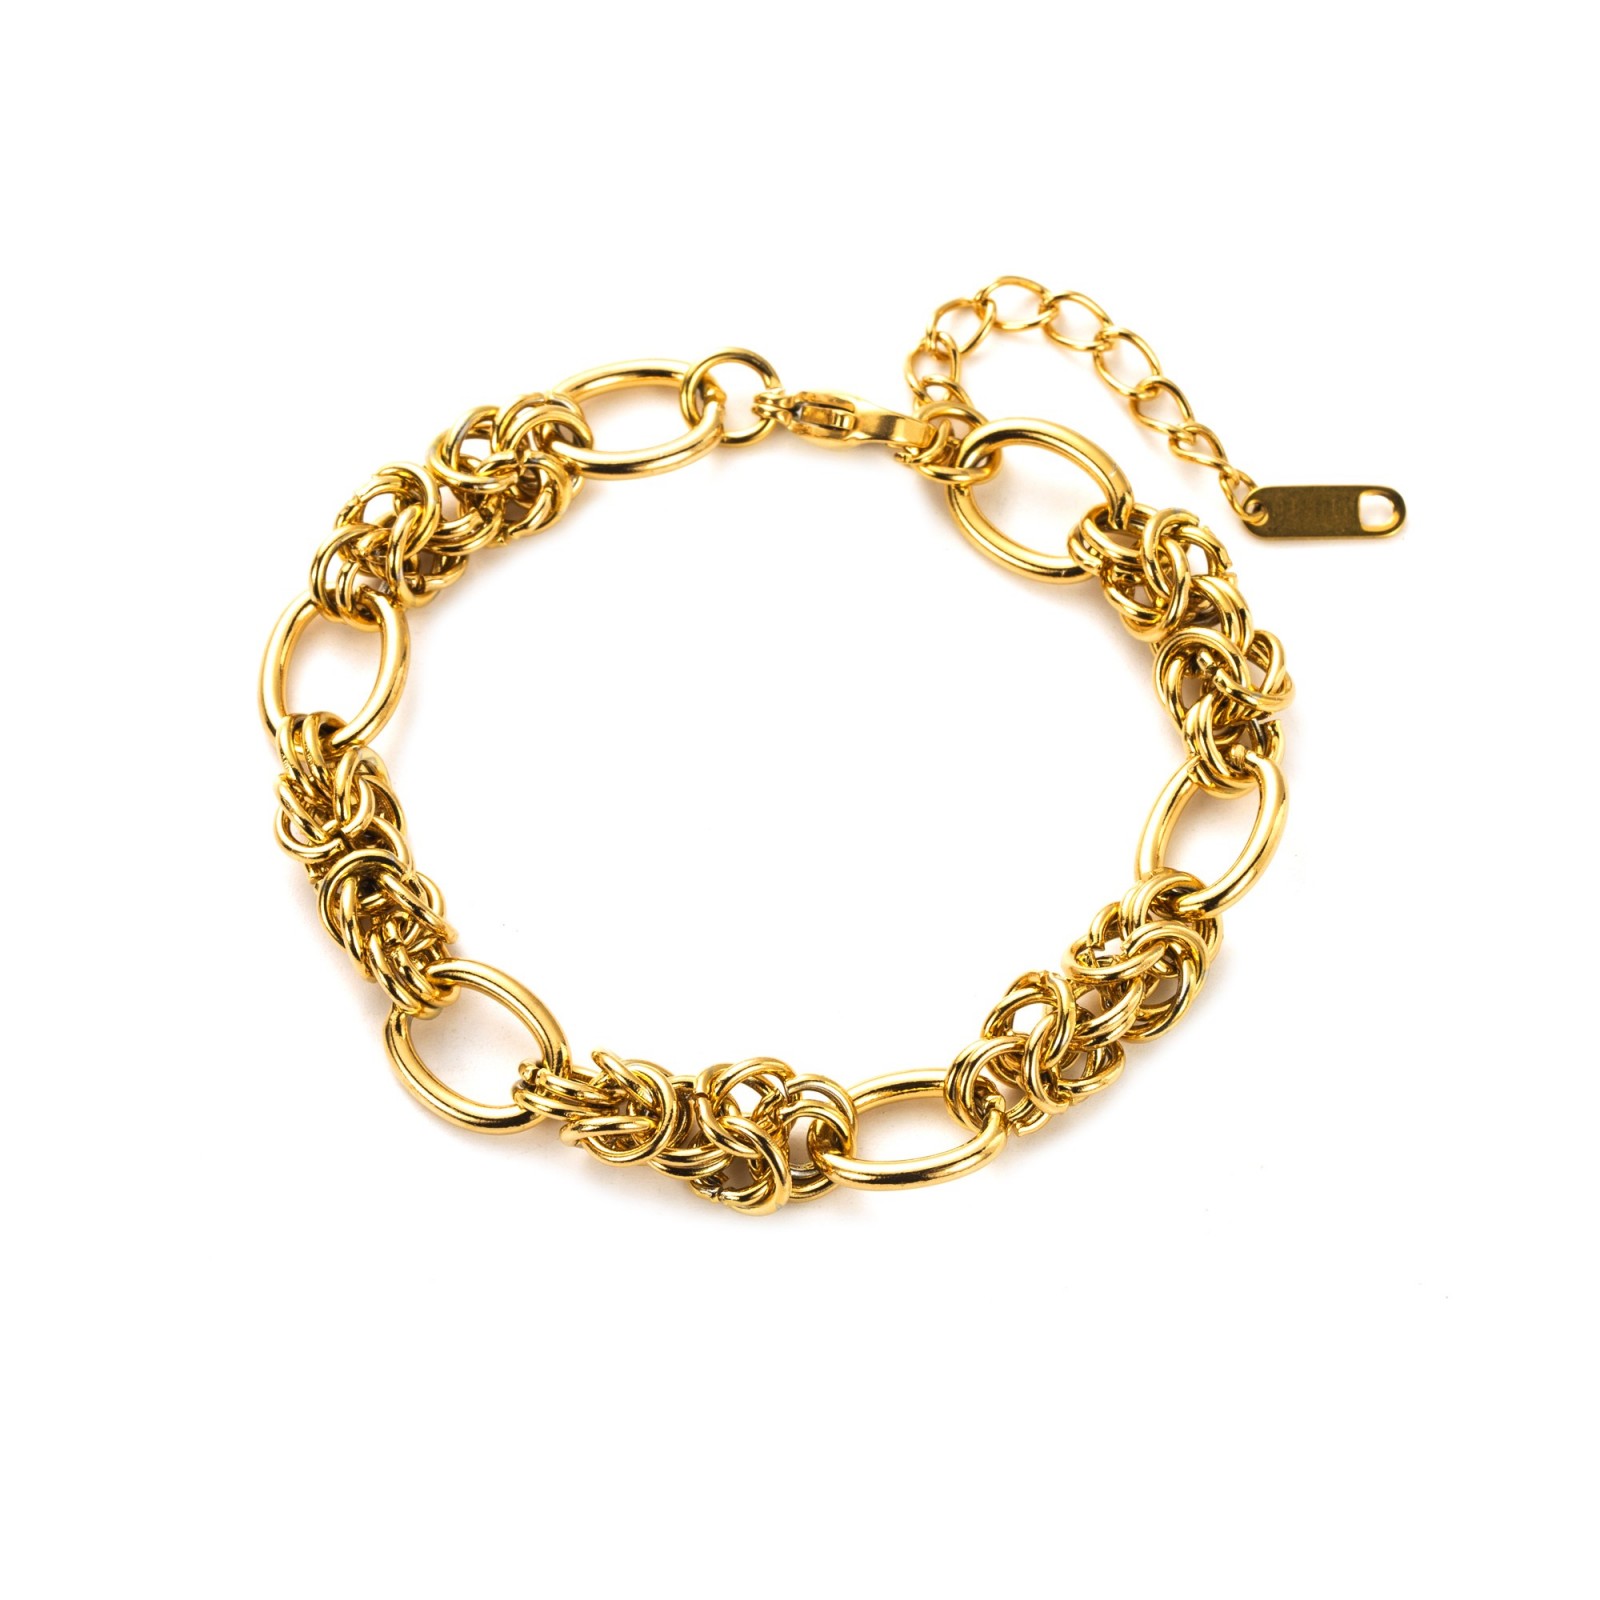 Bracelet Color:Gold